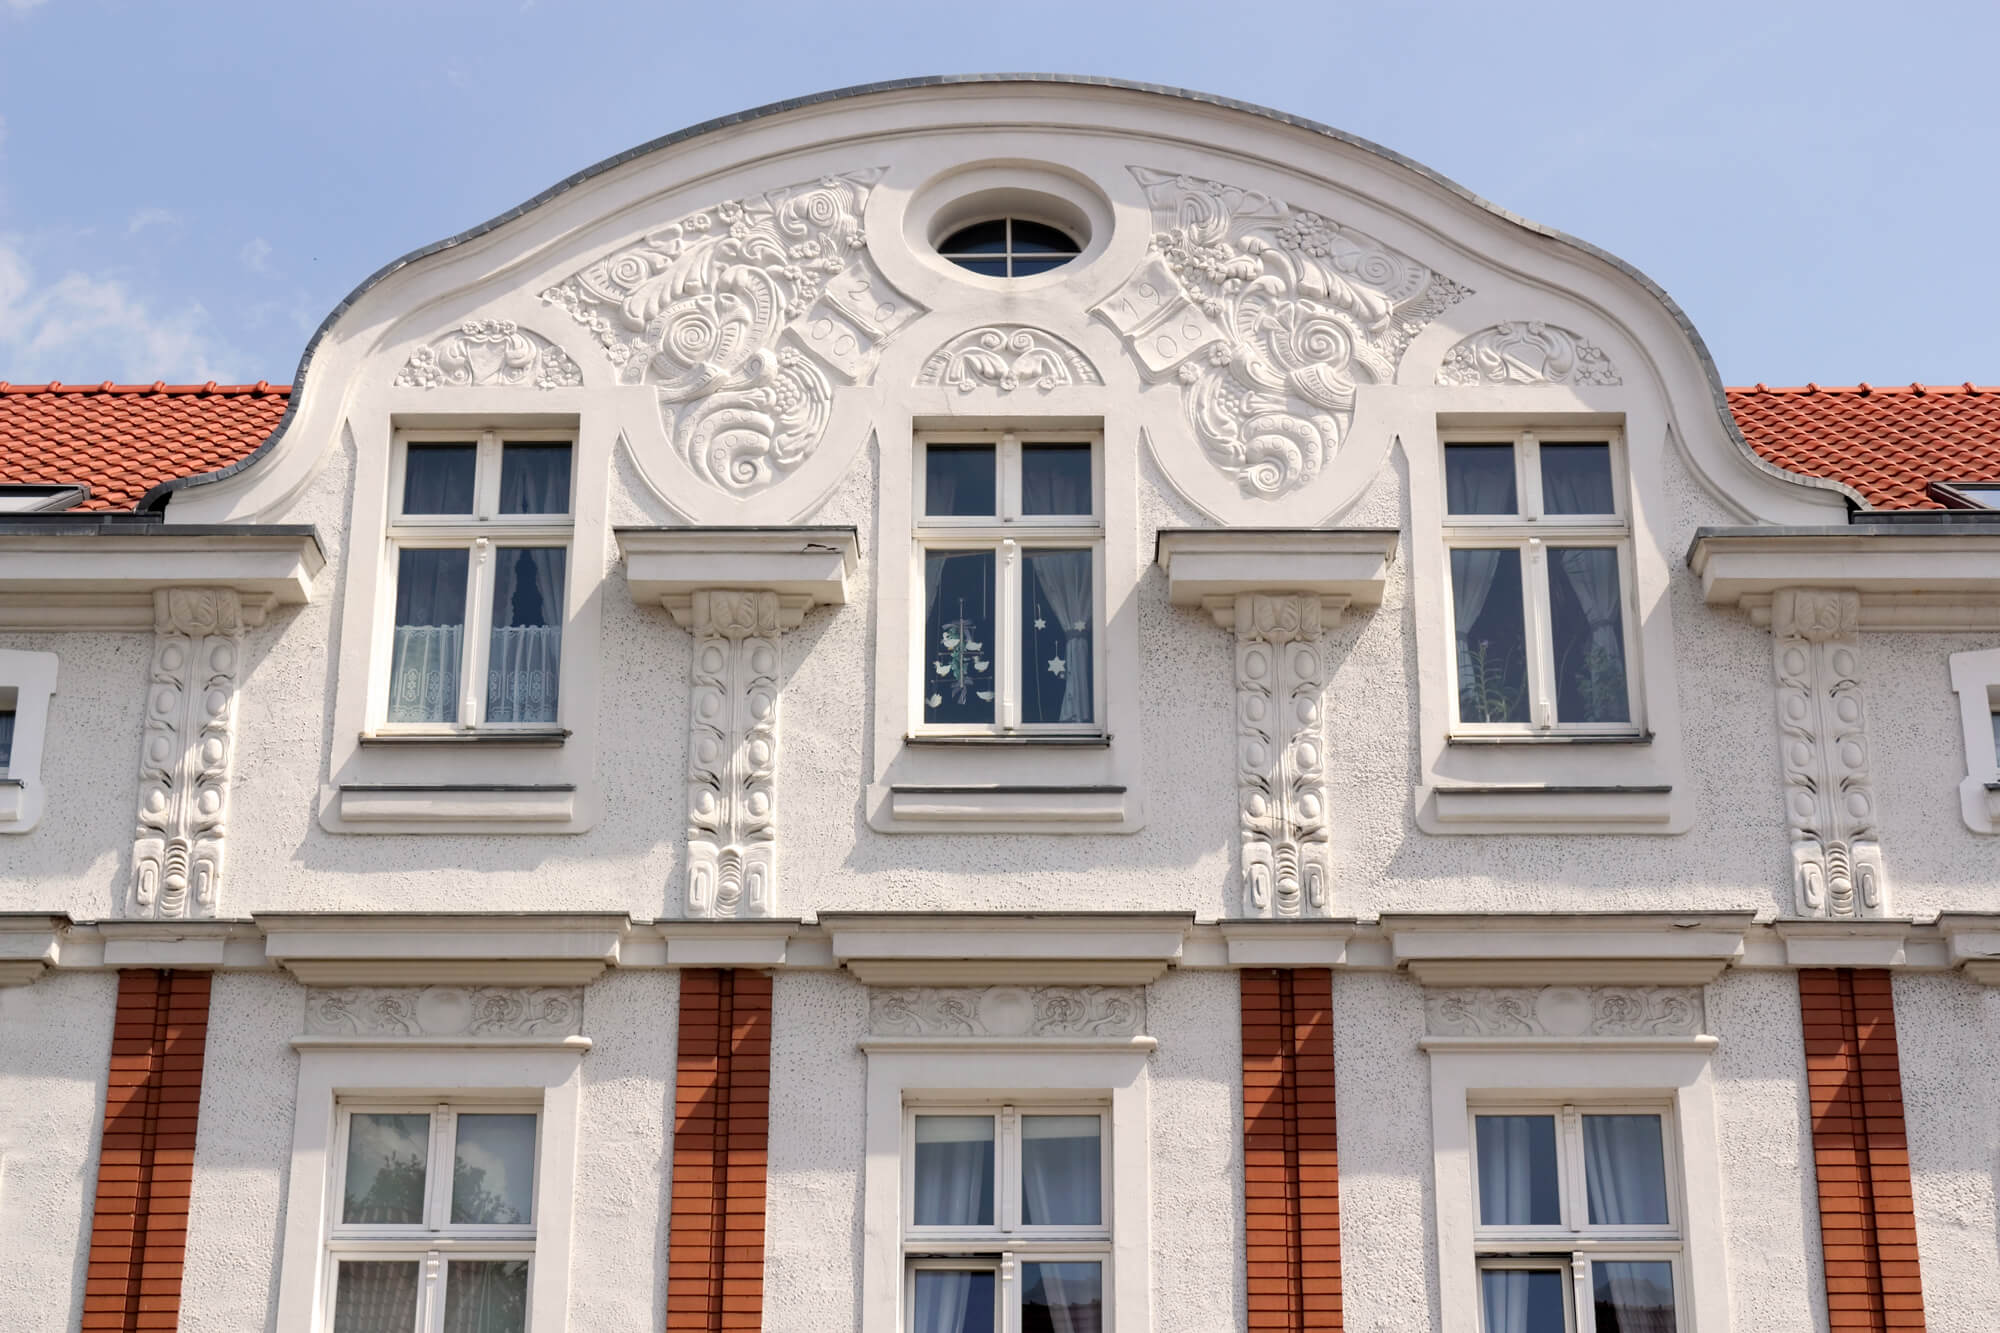 Anlässe für Immobilienbewertung in Münster in Nordrhein-Westfalen